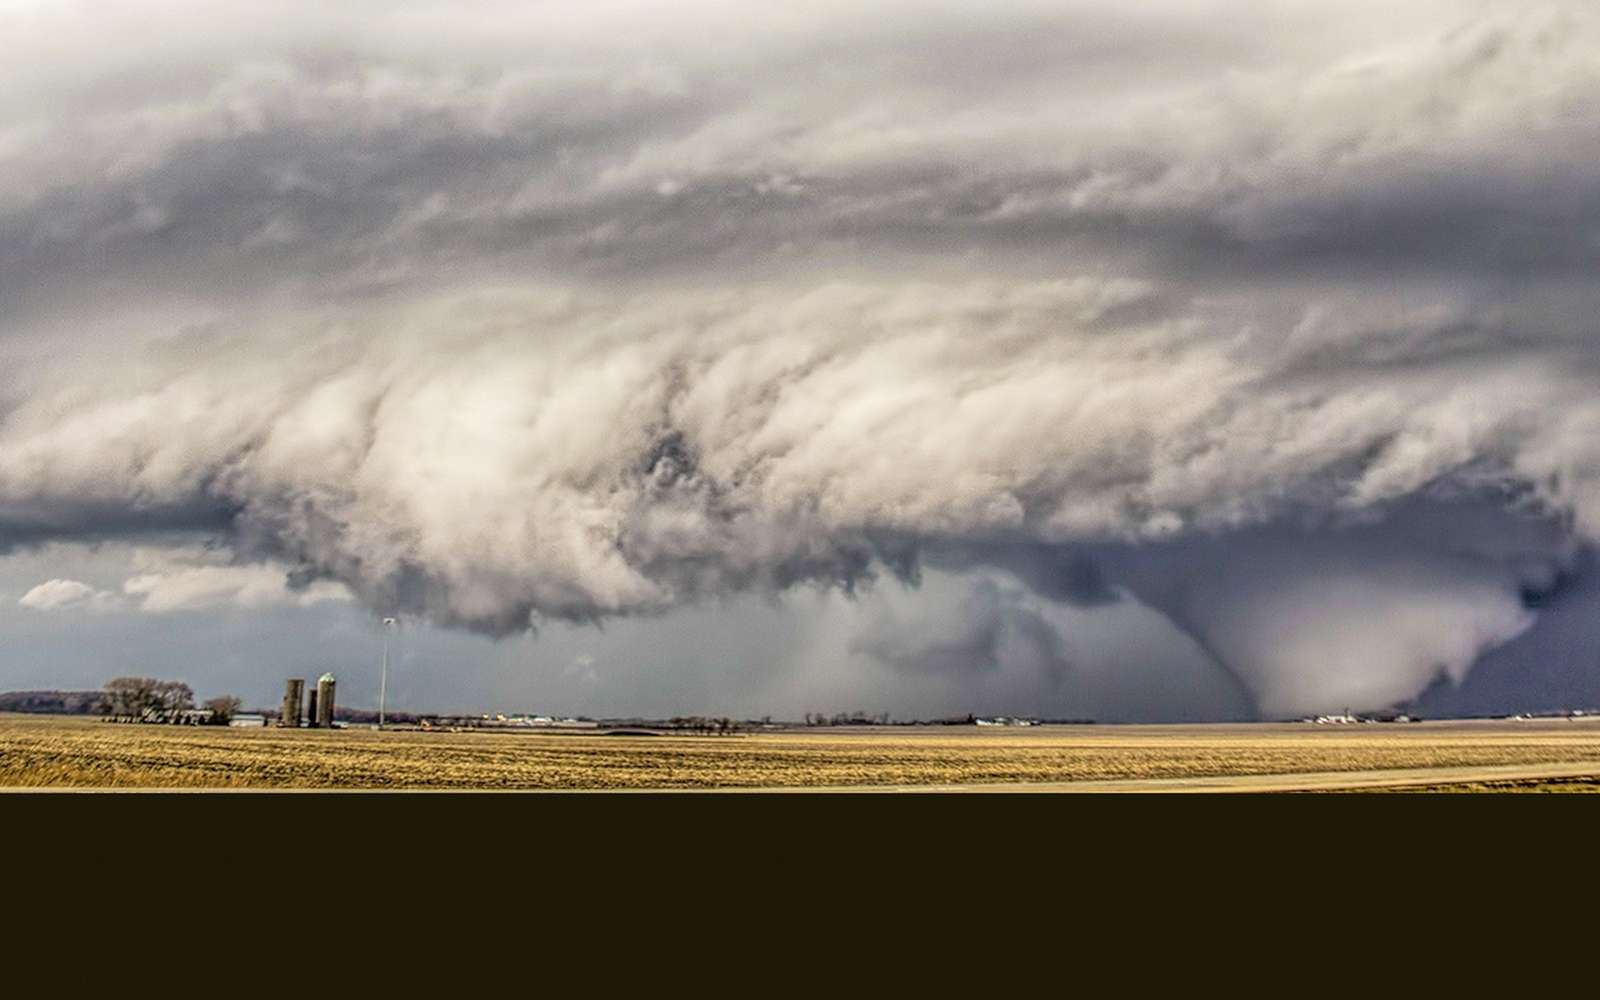 Phénomène météo extraordinaire : la tornade wedge, un tourbillon monstrueux